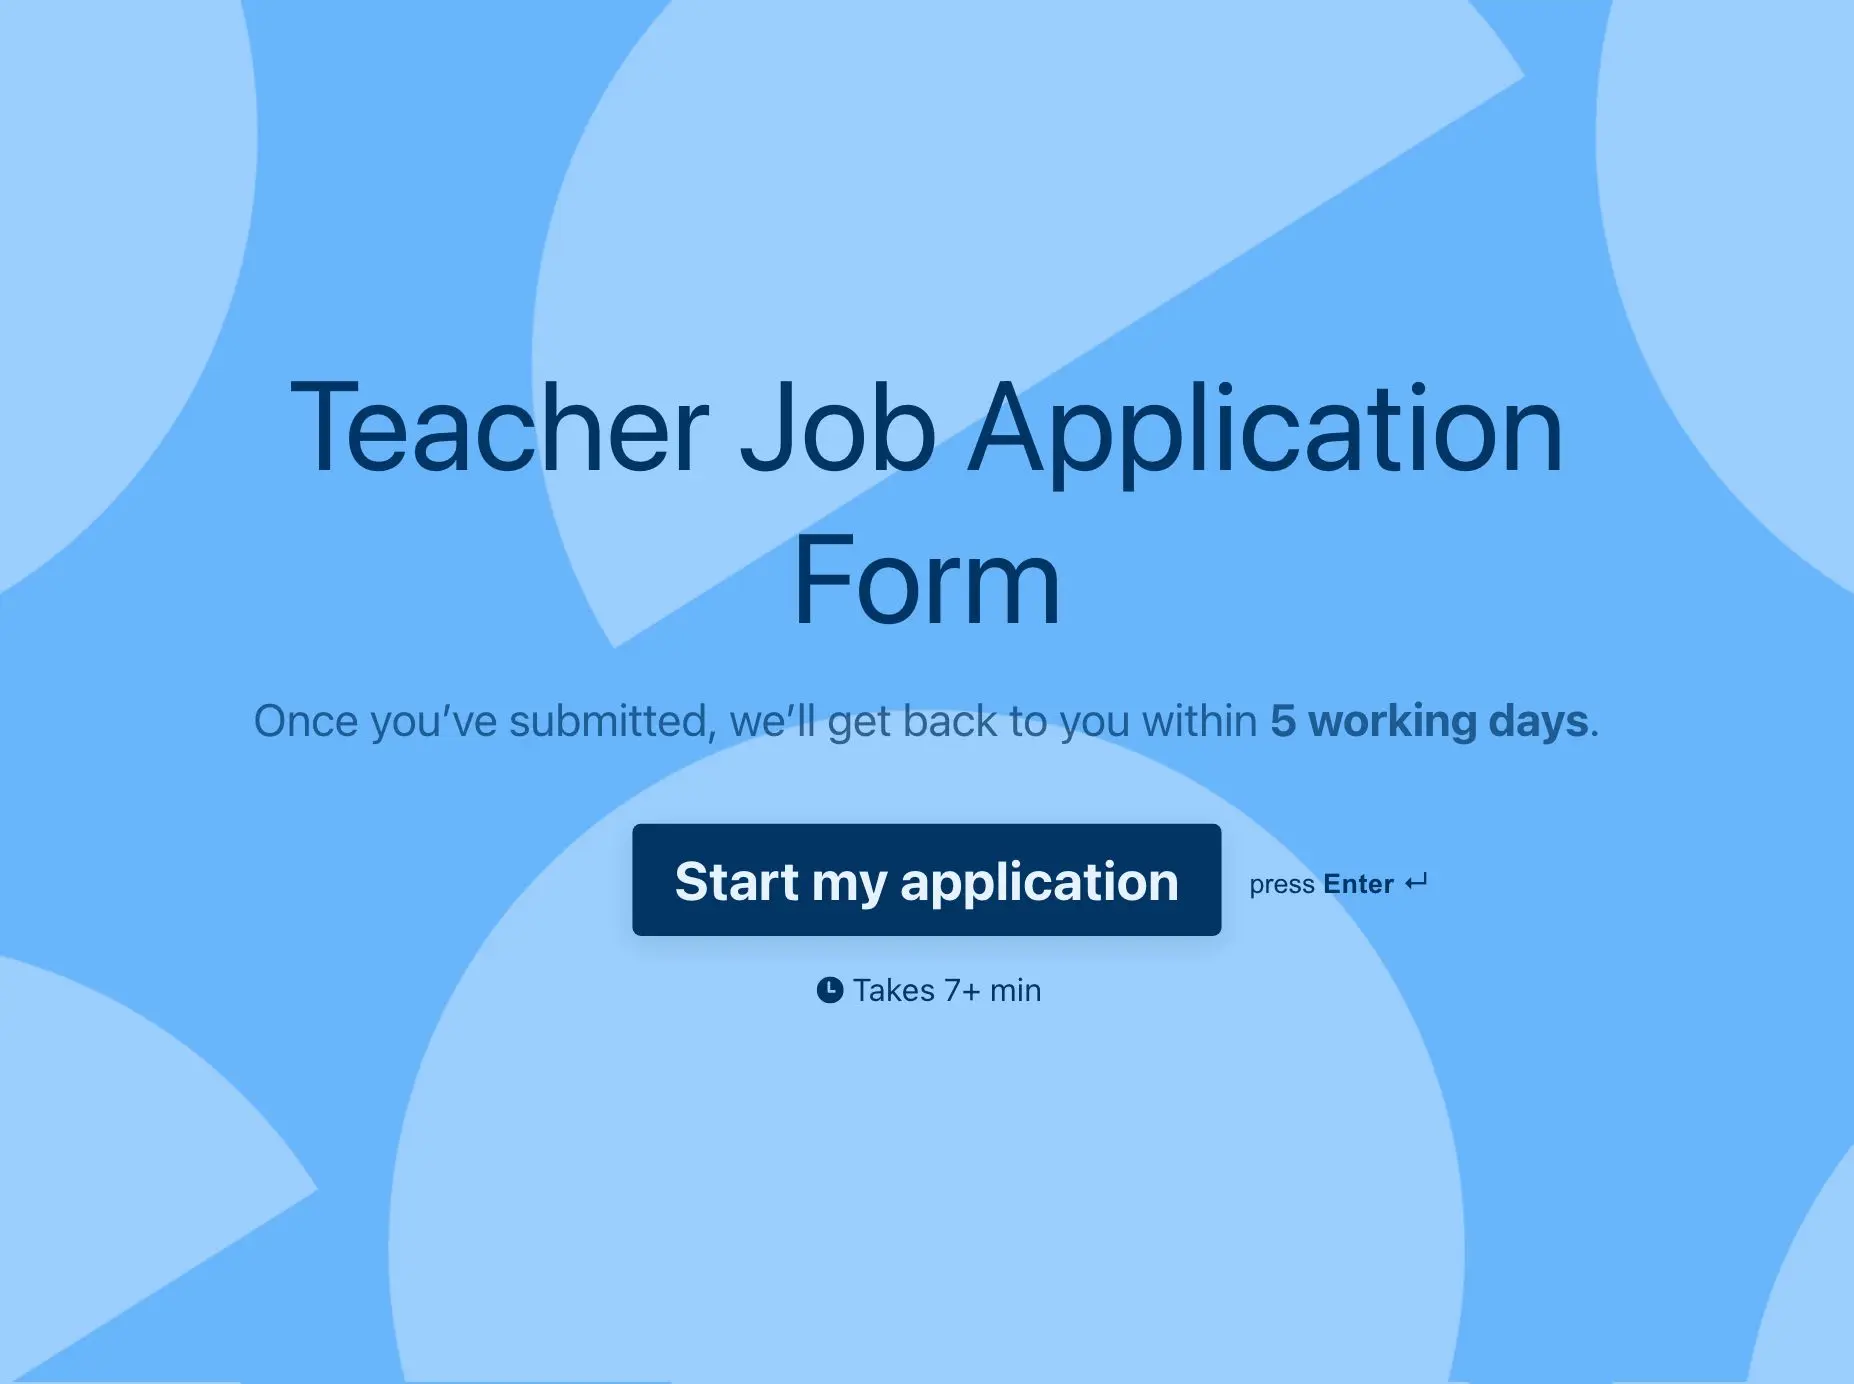 Teacher Job Application Form Template Hero